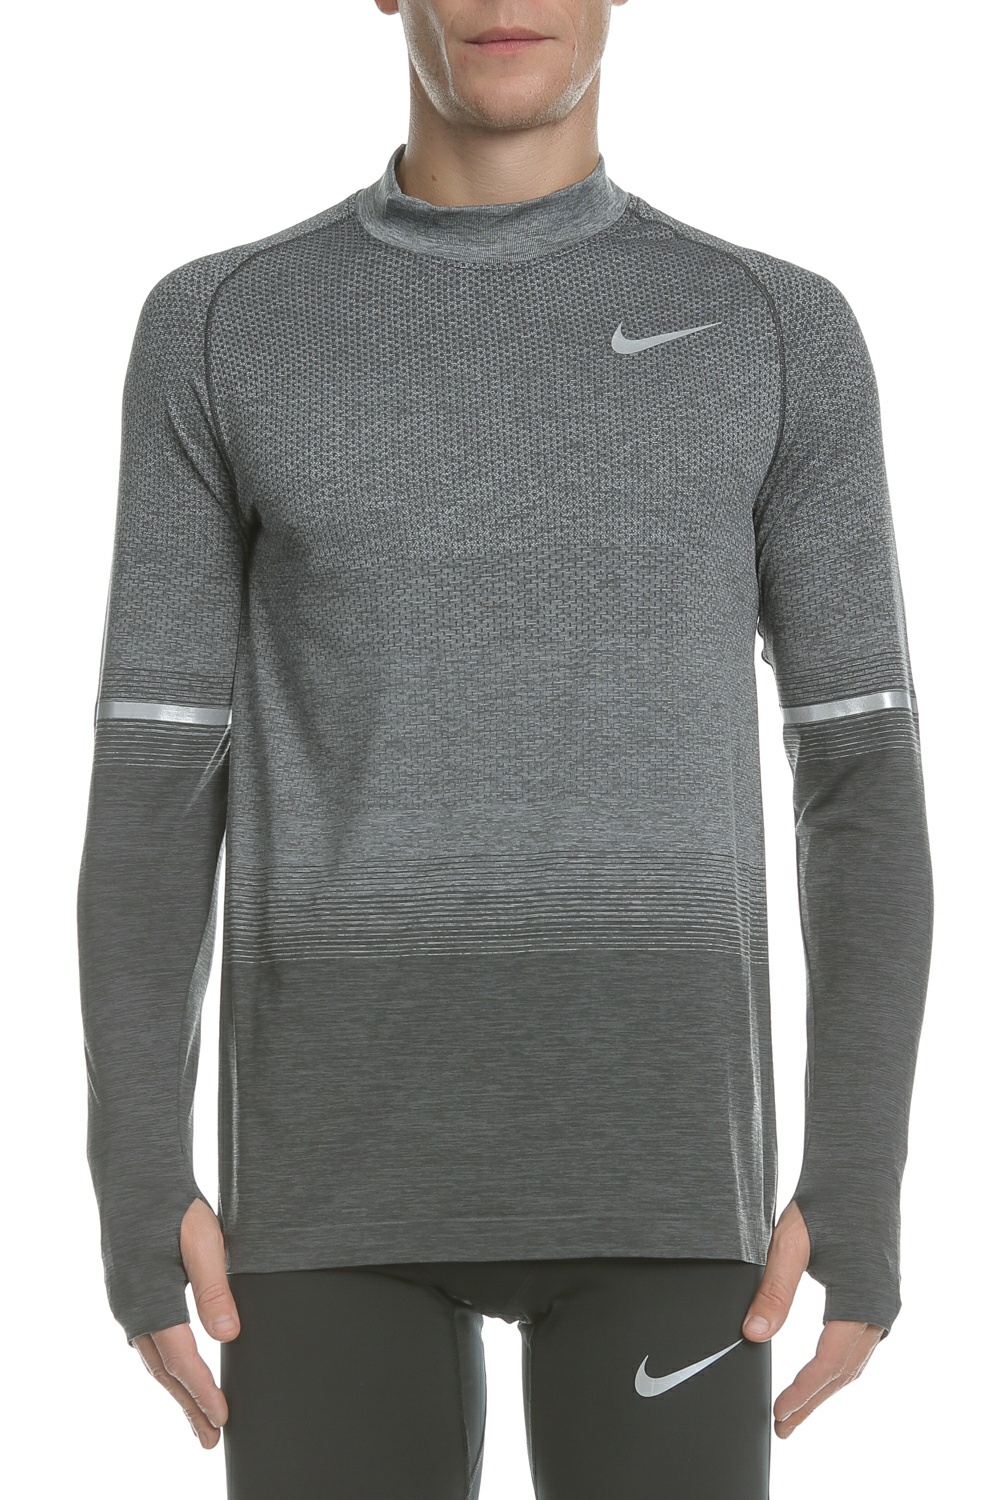 Ανδρικά/Ρούχα/Αθλητικά/Φούτερ-Μακρυμάνικα NIKE - Μακρυμάνικη μπλούζα για τρέξιμο NIKE DRI-FIT KNIT γκρι